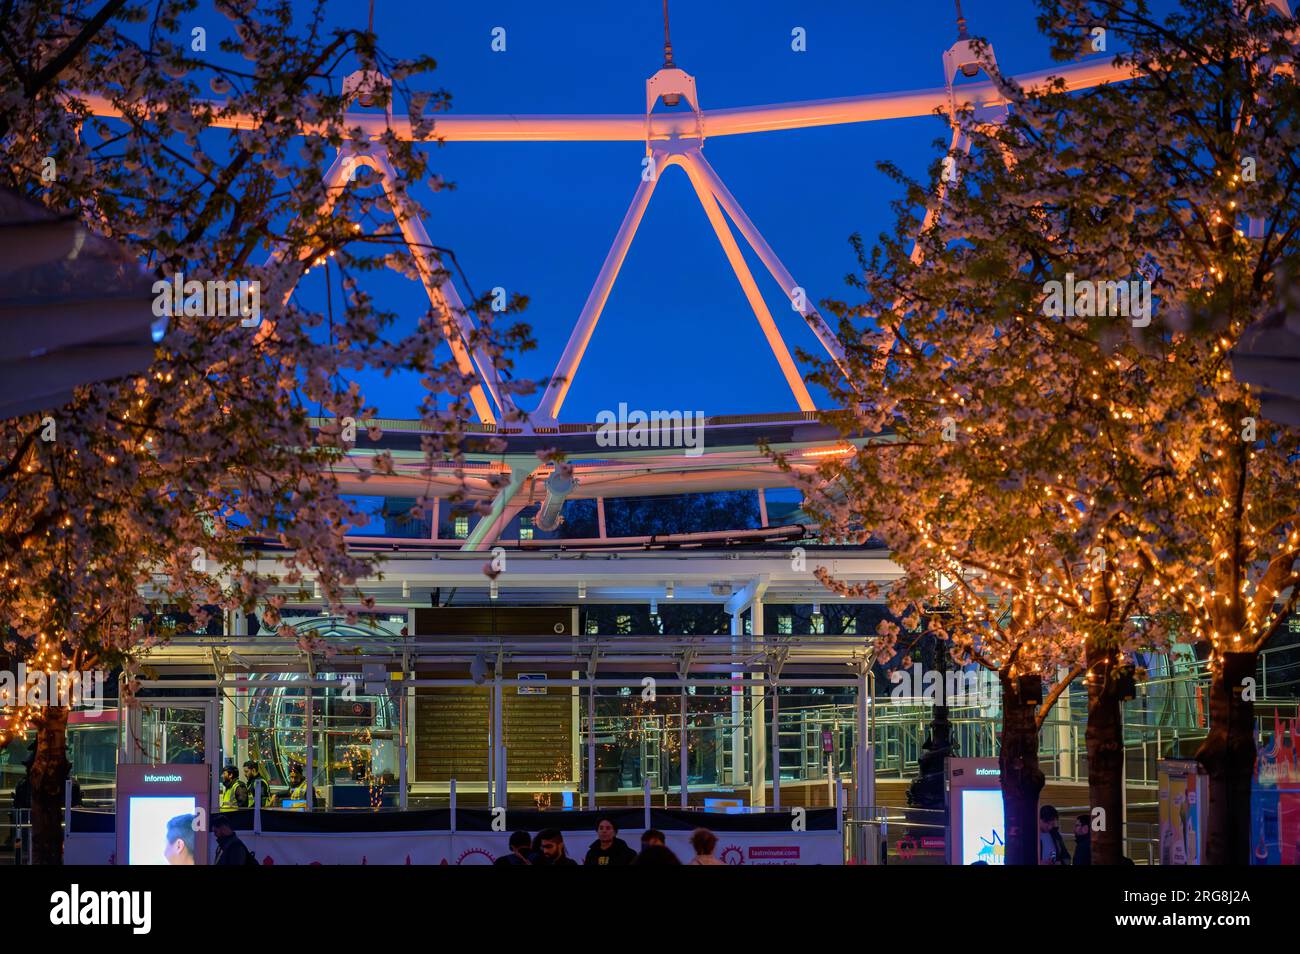 LONDRES - 22 de abril de 2023: El área de embarque del London Eye resplandece en naranja para el Día de Stephen Lawrence, enmarcado por árboles en primer plano iluminados con naranjos al final de la tarde Foto de stock